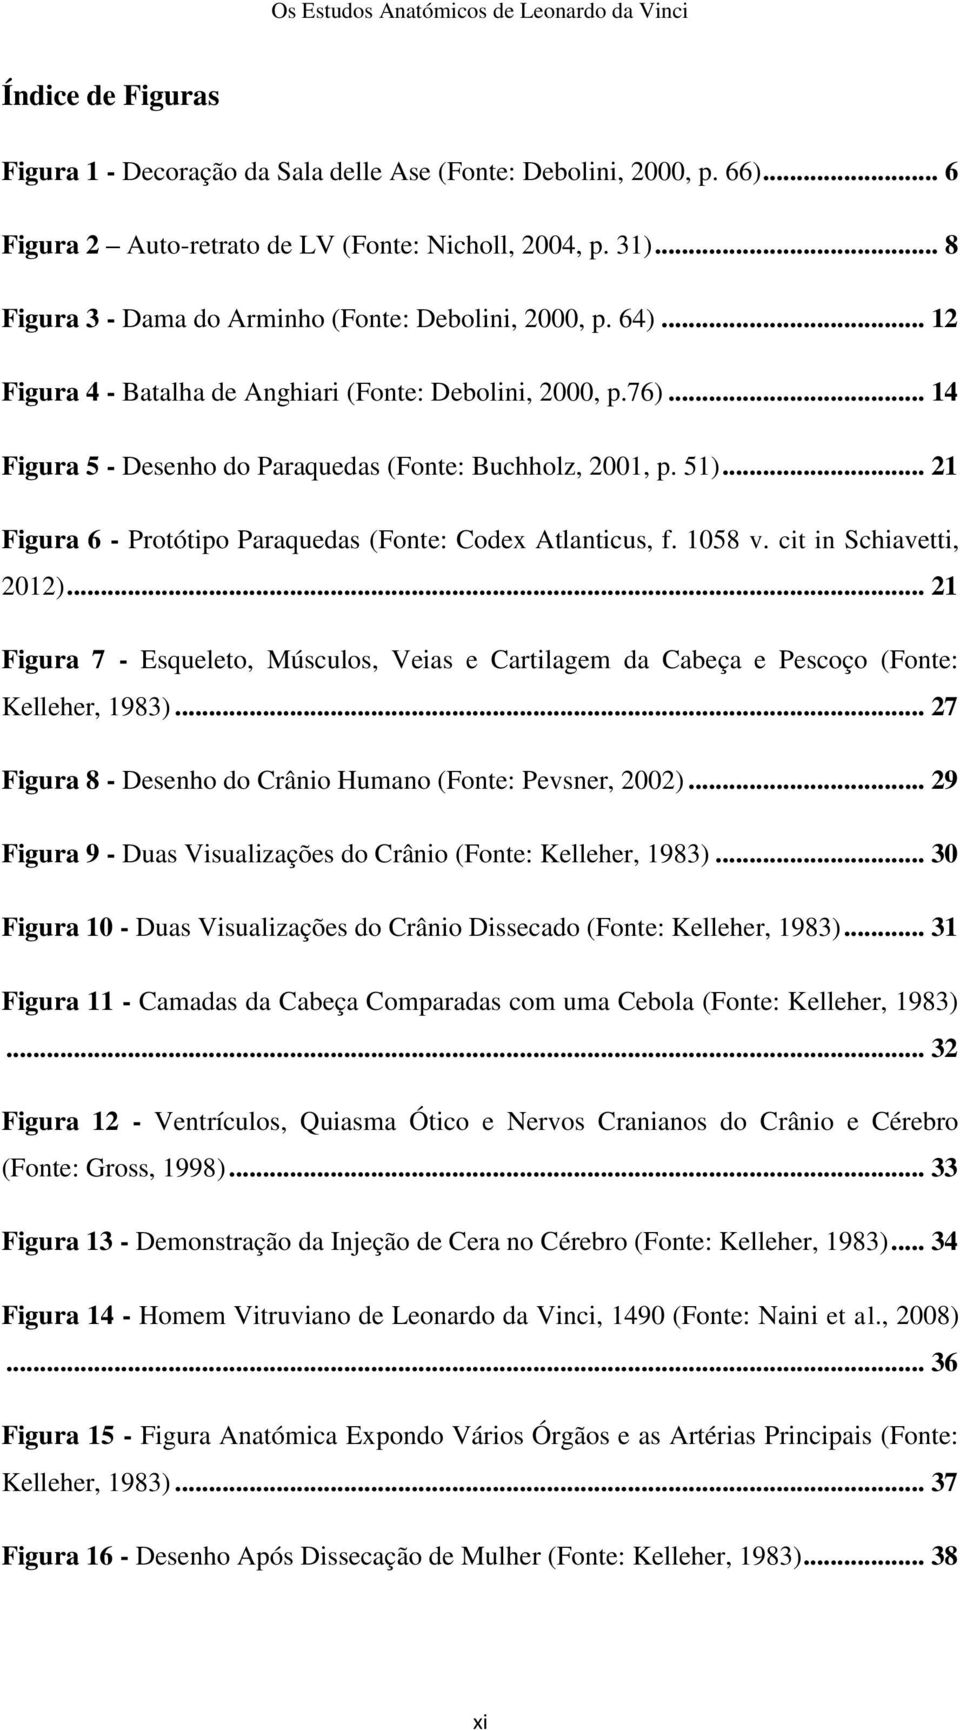 .. 21 Figura 6 - Protótipo Paraquedas (Fonte: Codex Atlanticus, f. 1058 v. cit in Schiavetti, 2012)... 21 Figura 7 - Esqueleto, Músculos, Veias e Cartilagem da Cabeça e Pescoço (Fonte: Kelleher, 1983).